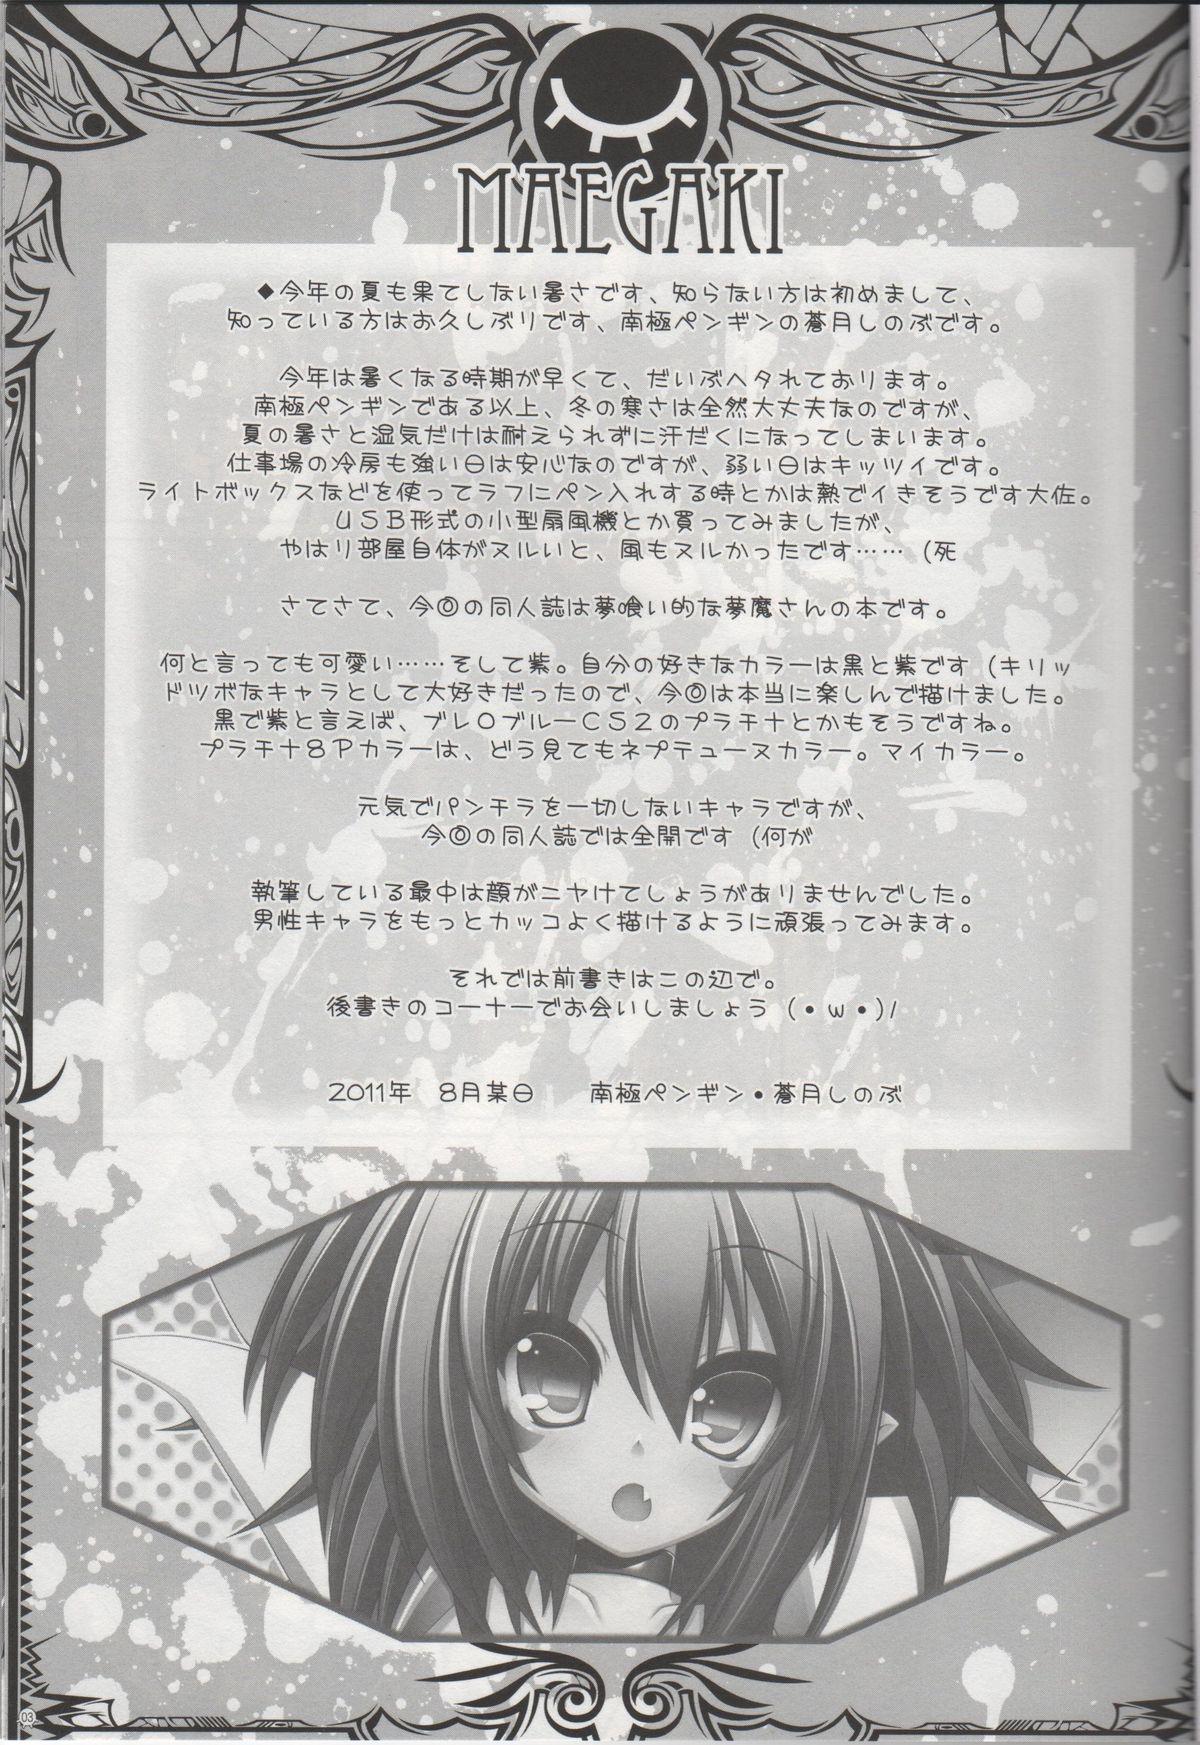 Pounding Merry-san no XXX!! - Yumekui merry Chaturbate - Page 2